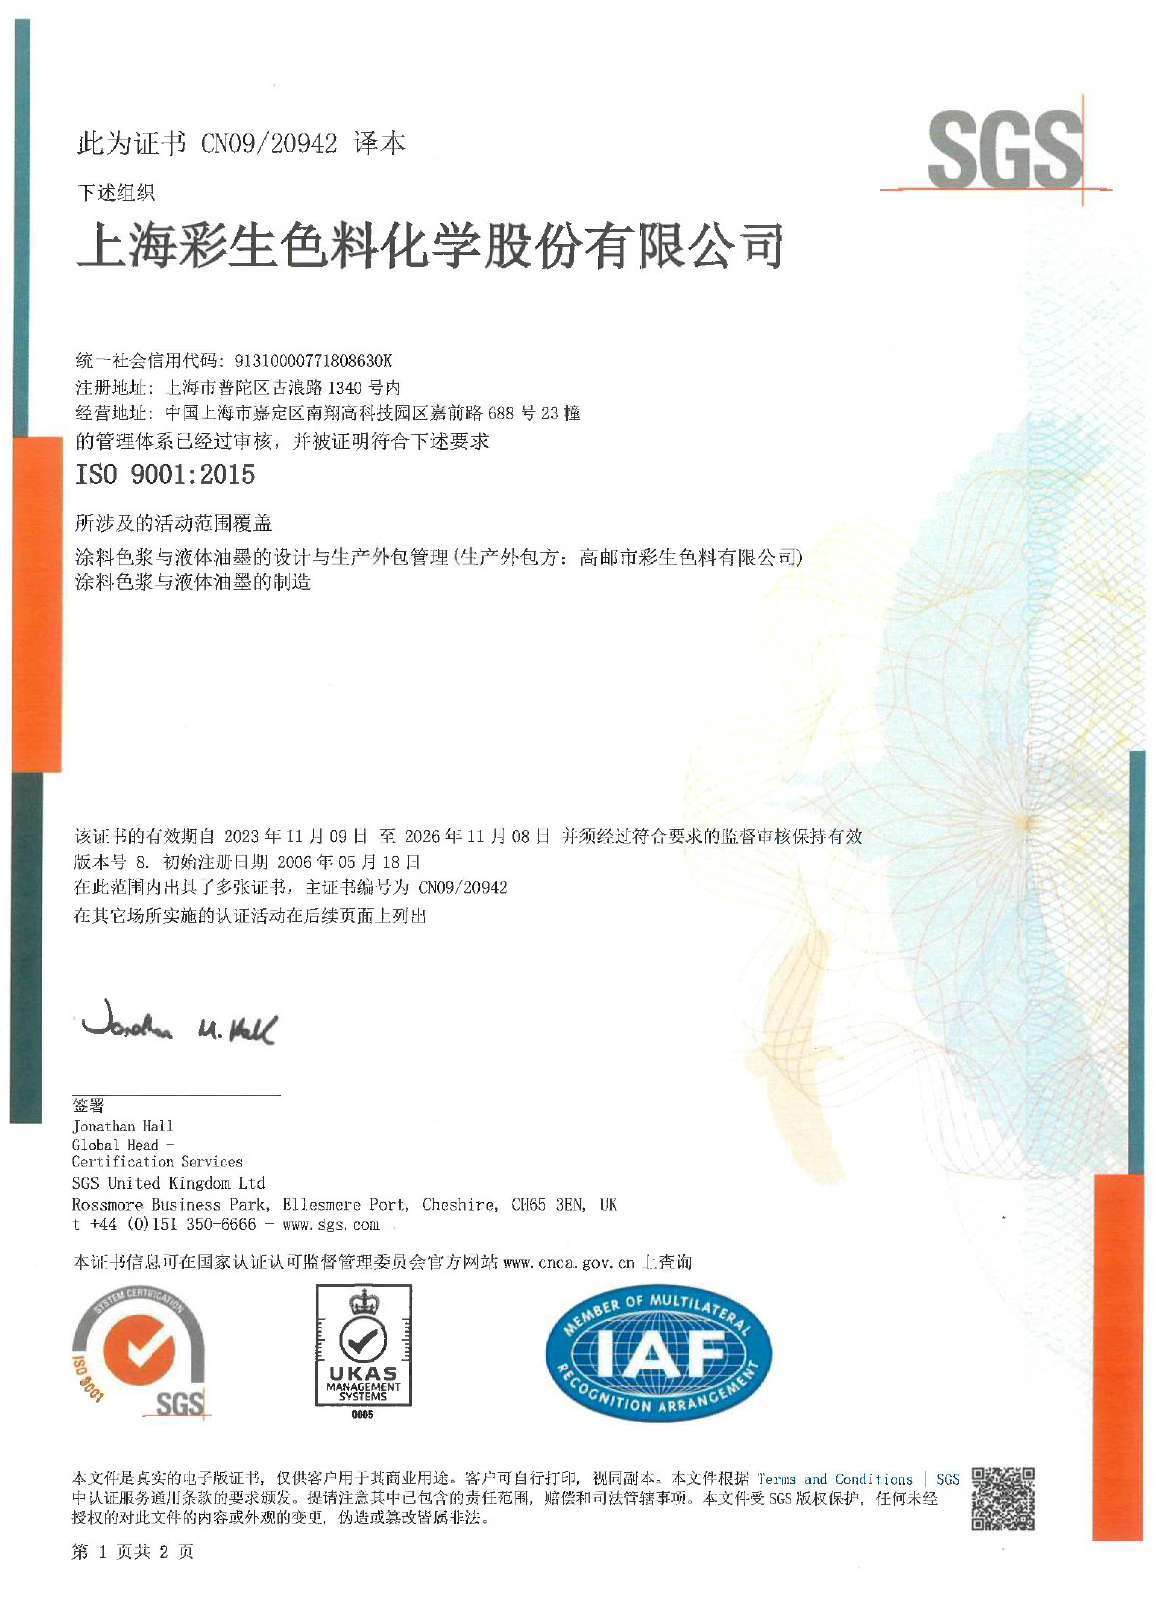 上海彩生ISO9001质量管理体系证书更新